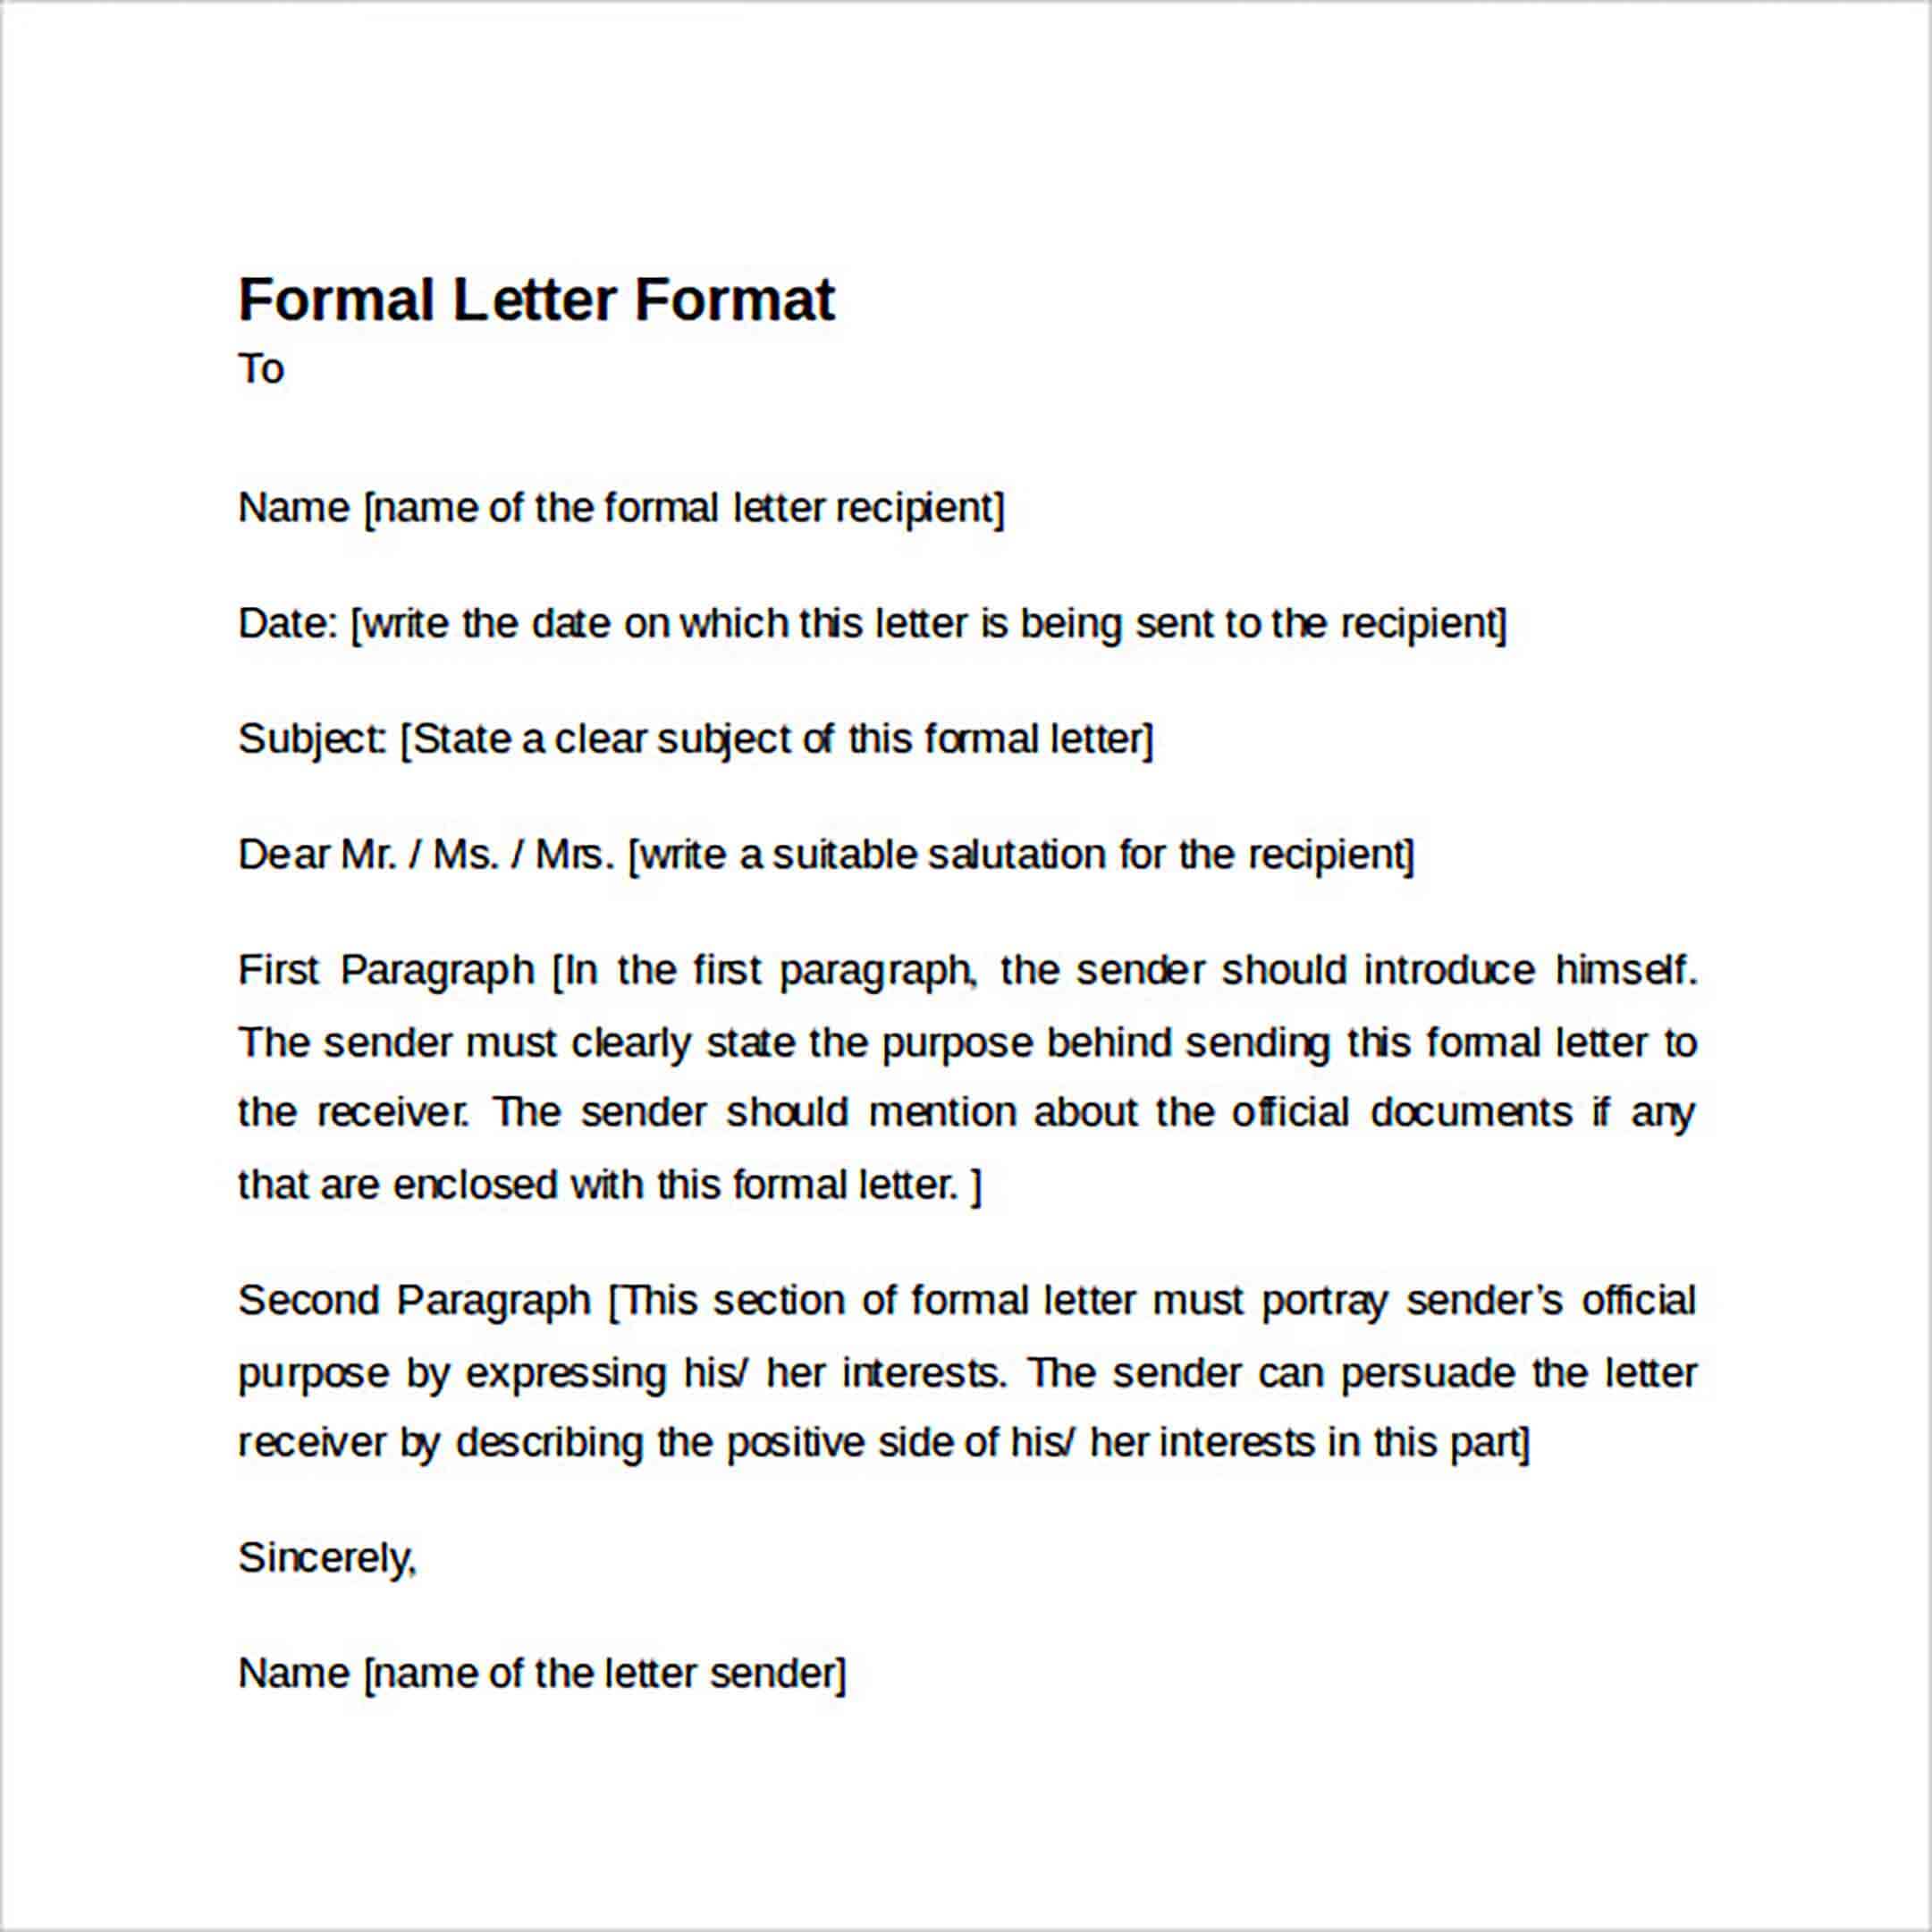 Sample Formal Letter Format